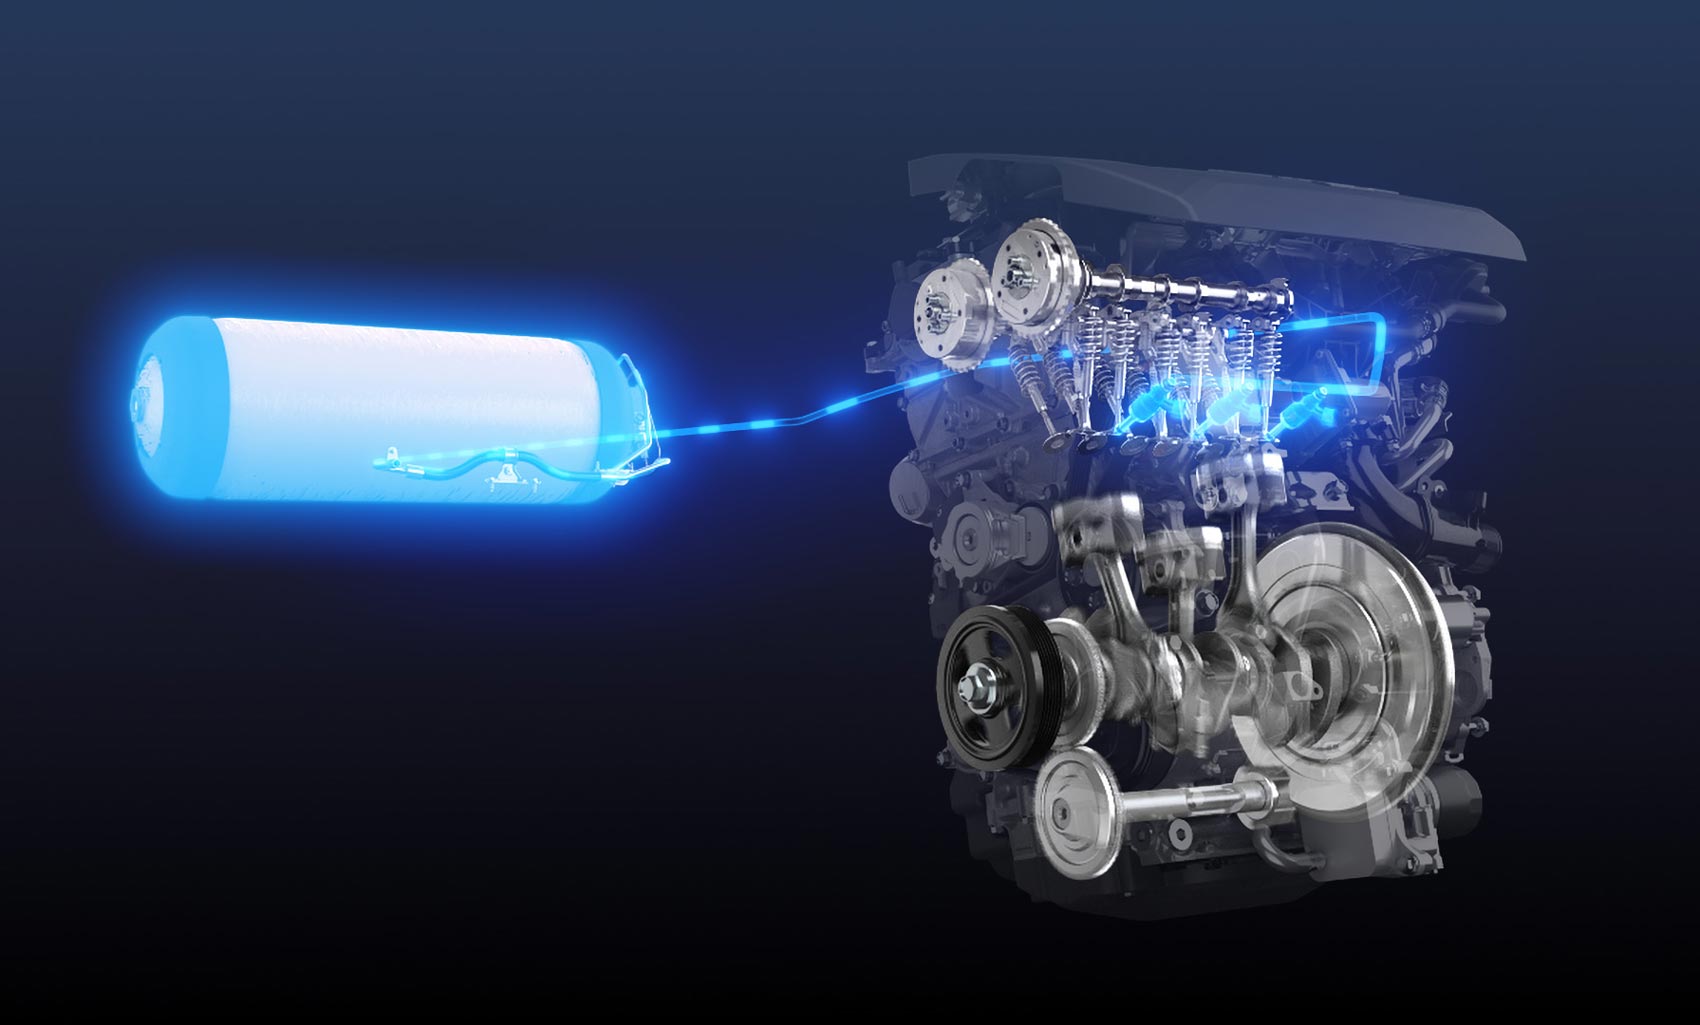 Pour contrer l'électrique, Toyota imagine un moteur hydrogène refroidi à l'eau